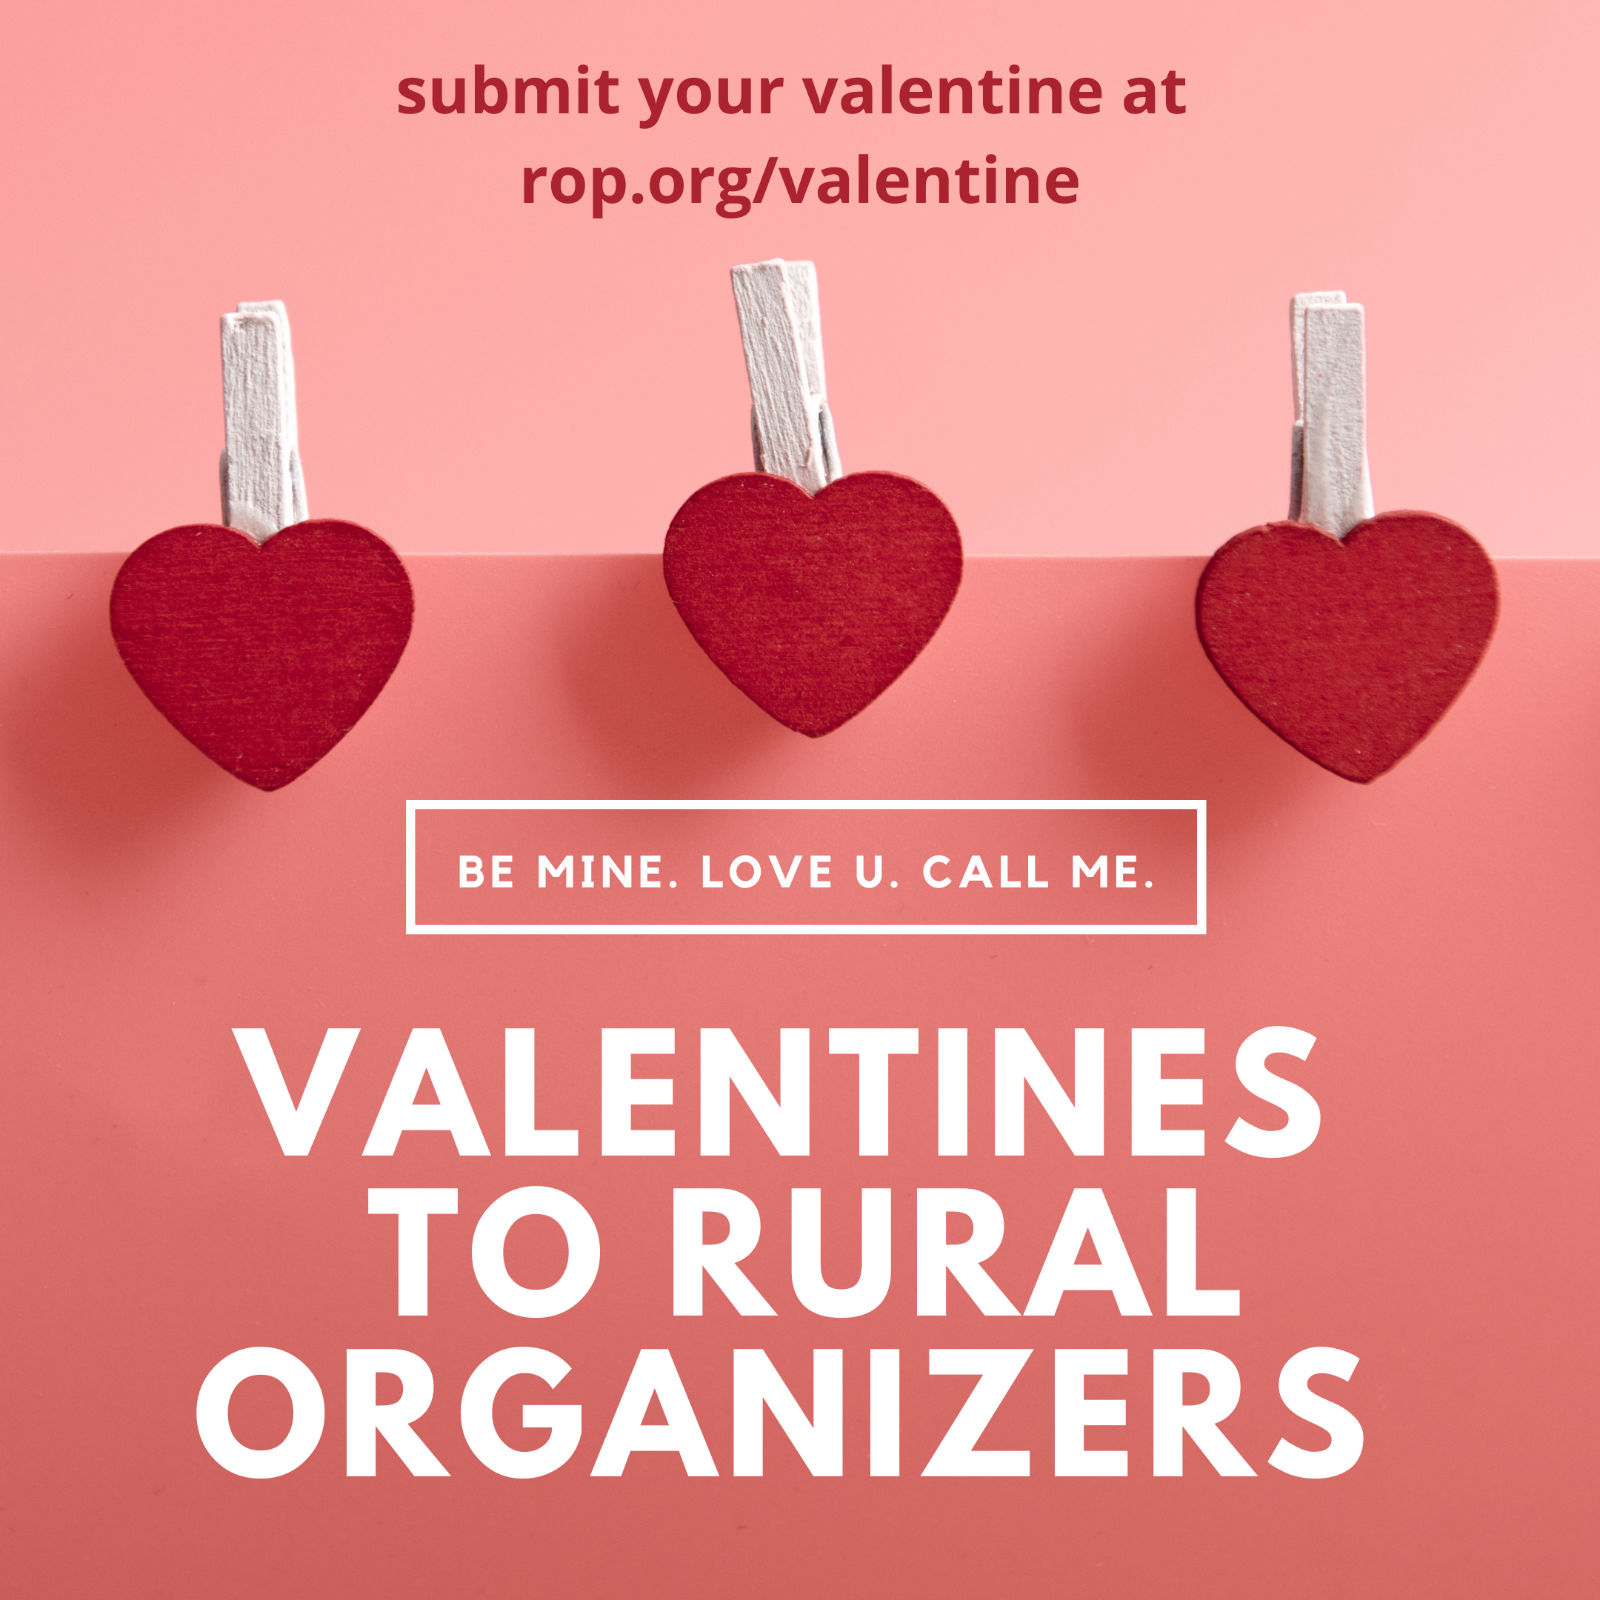 Submit your valentine at rop.org/valentine.